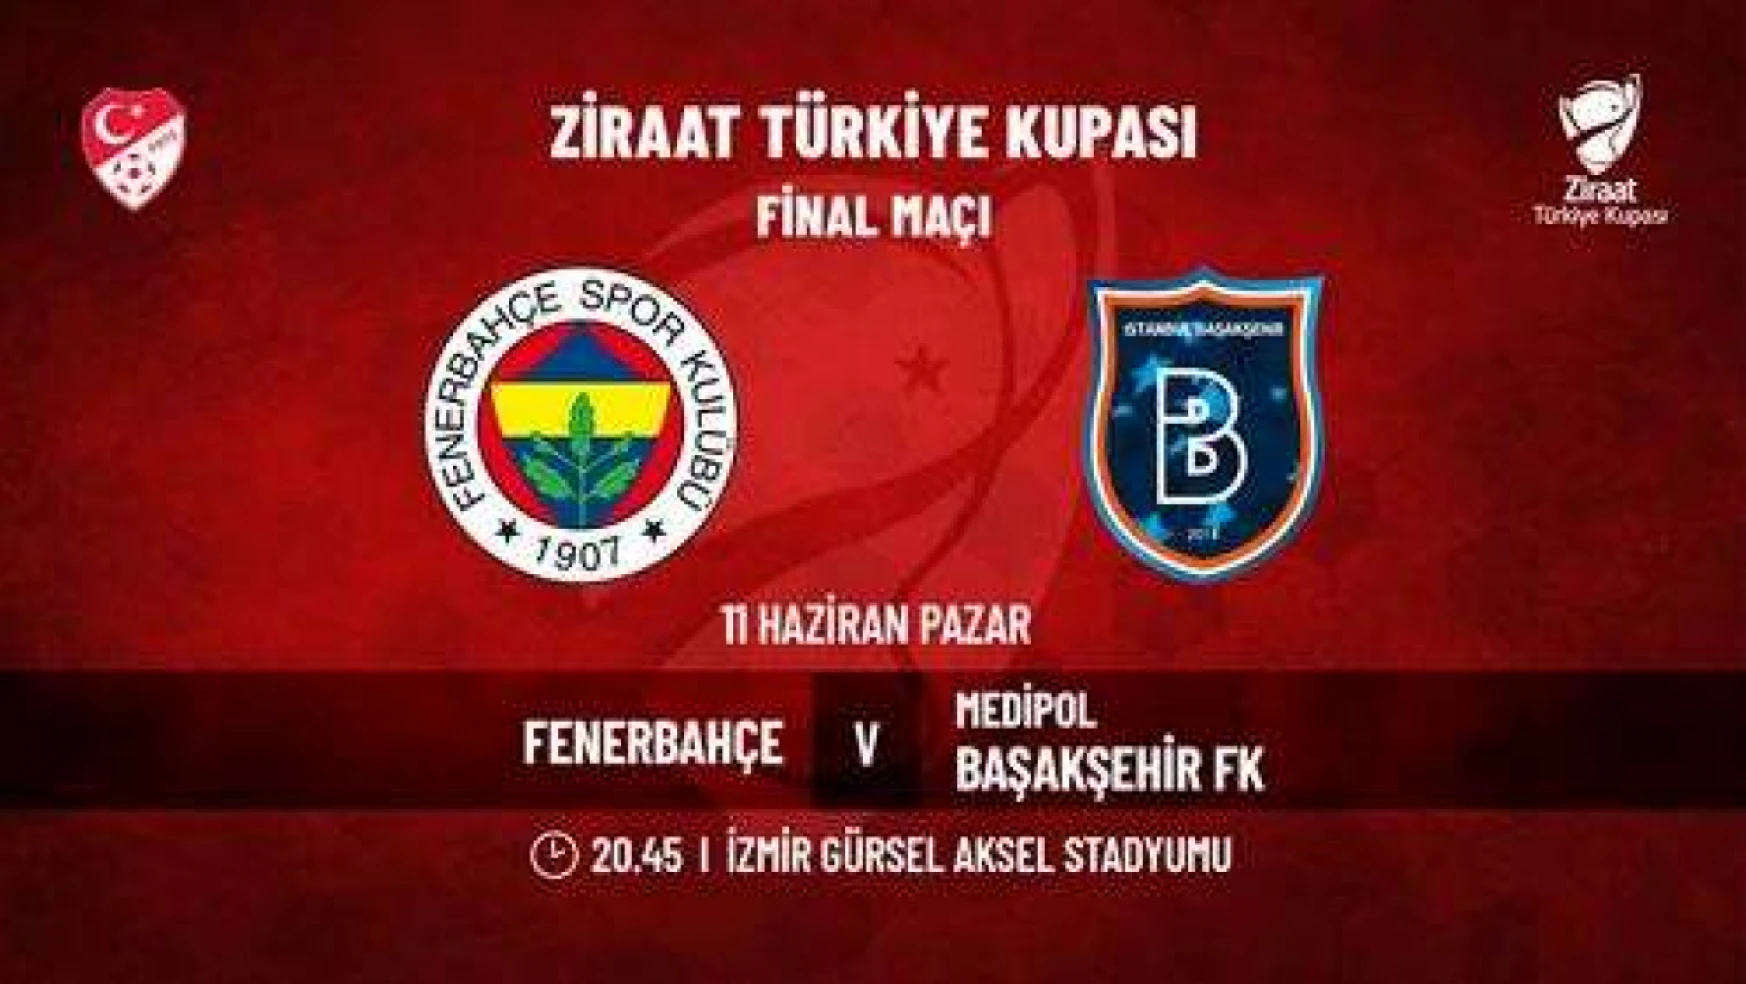 Ziraat Türkiye Kupası final maçı biletleri satışta